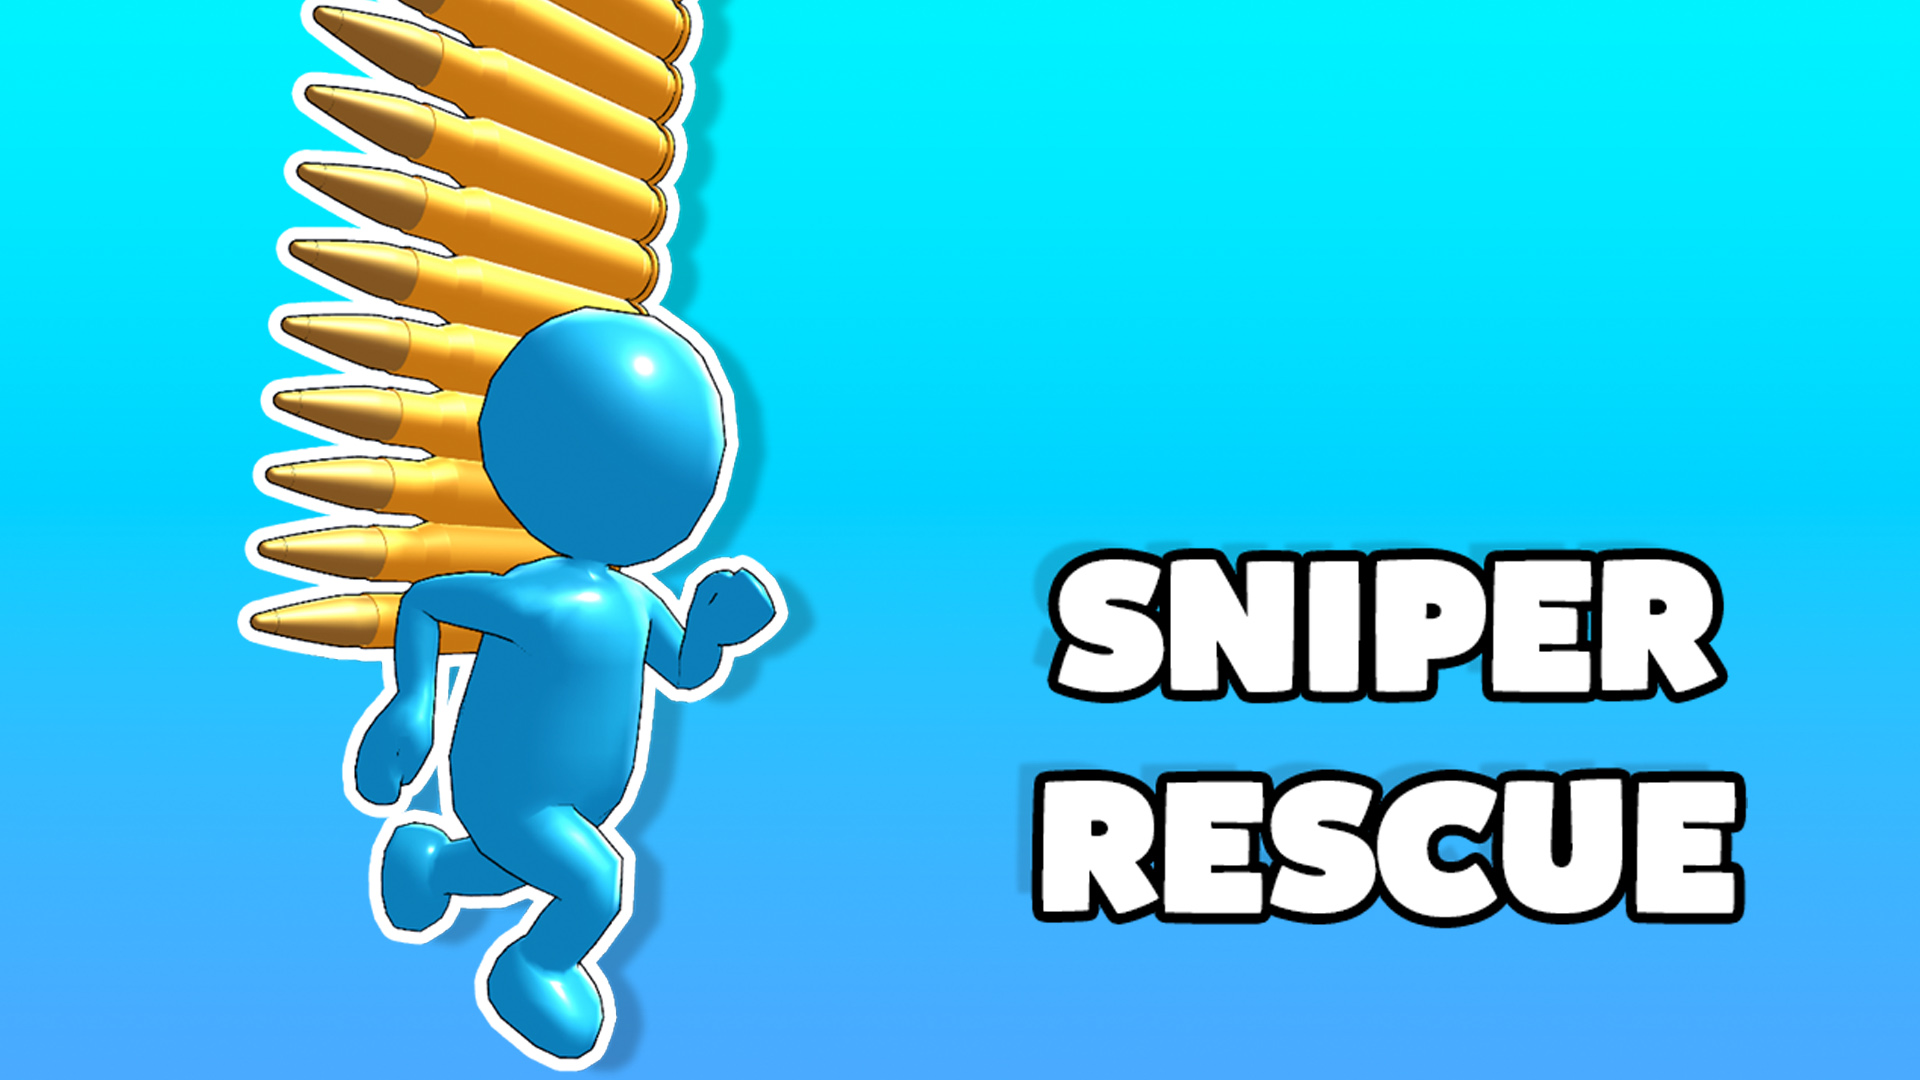 Sniper Rescue